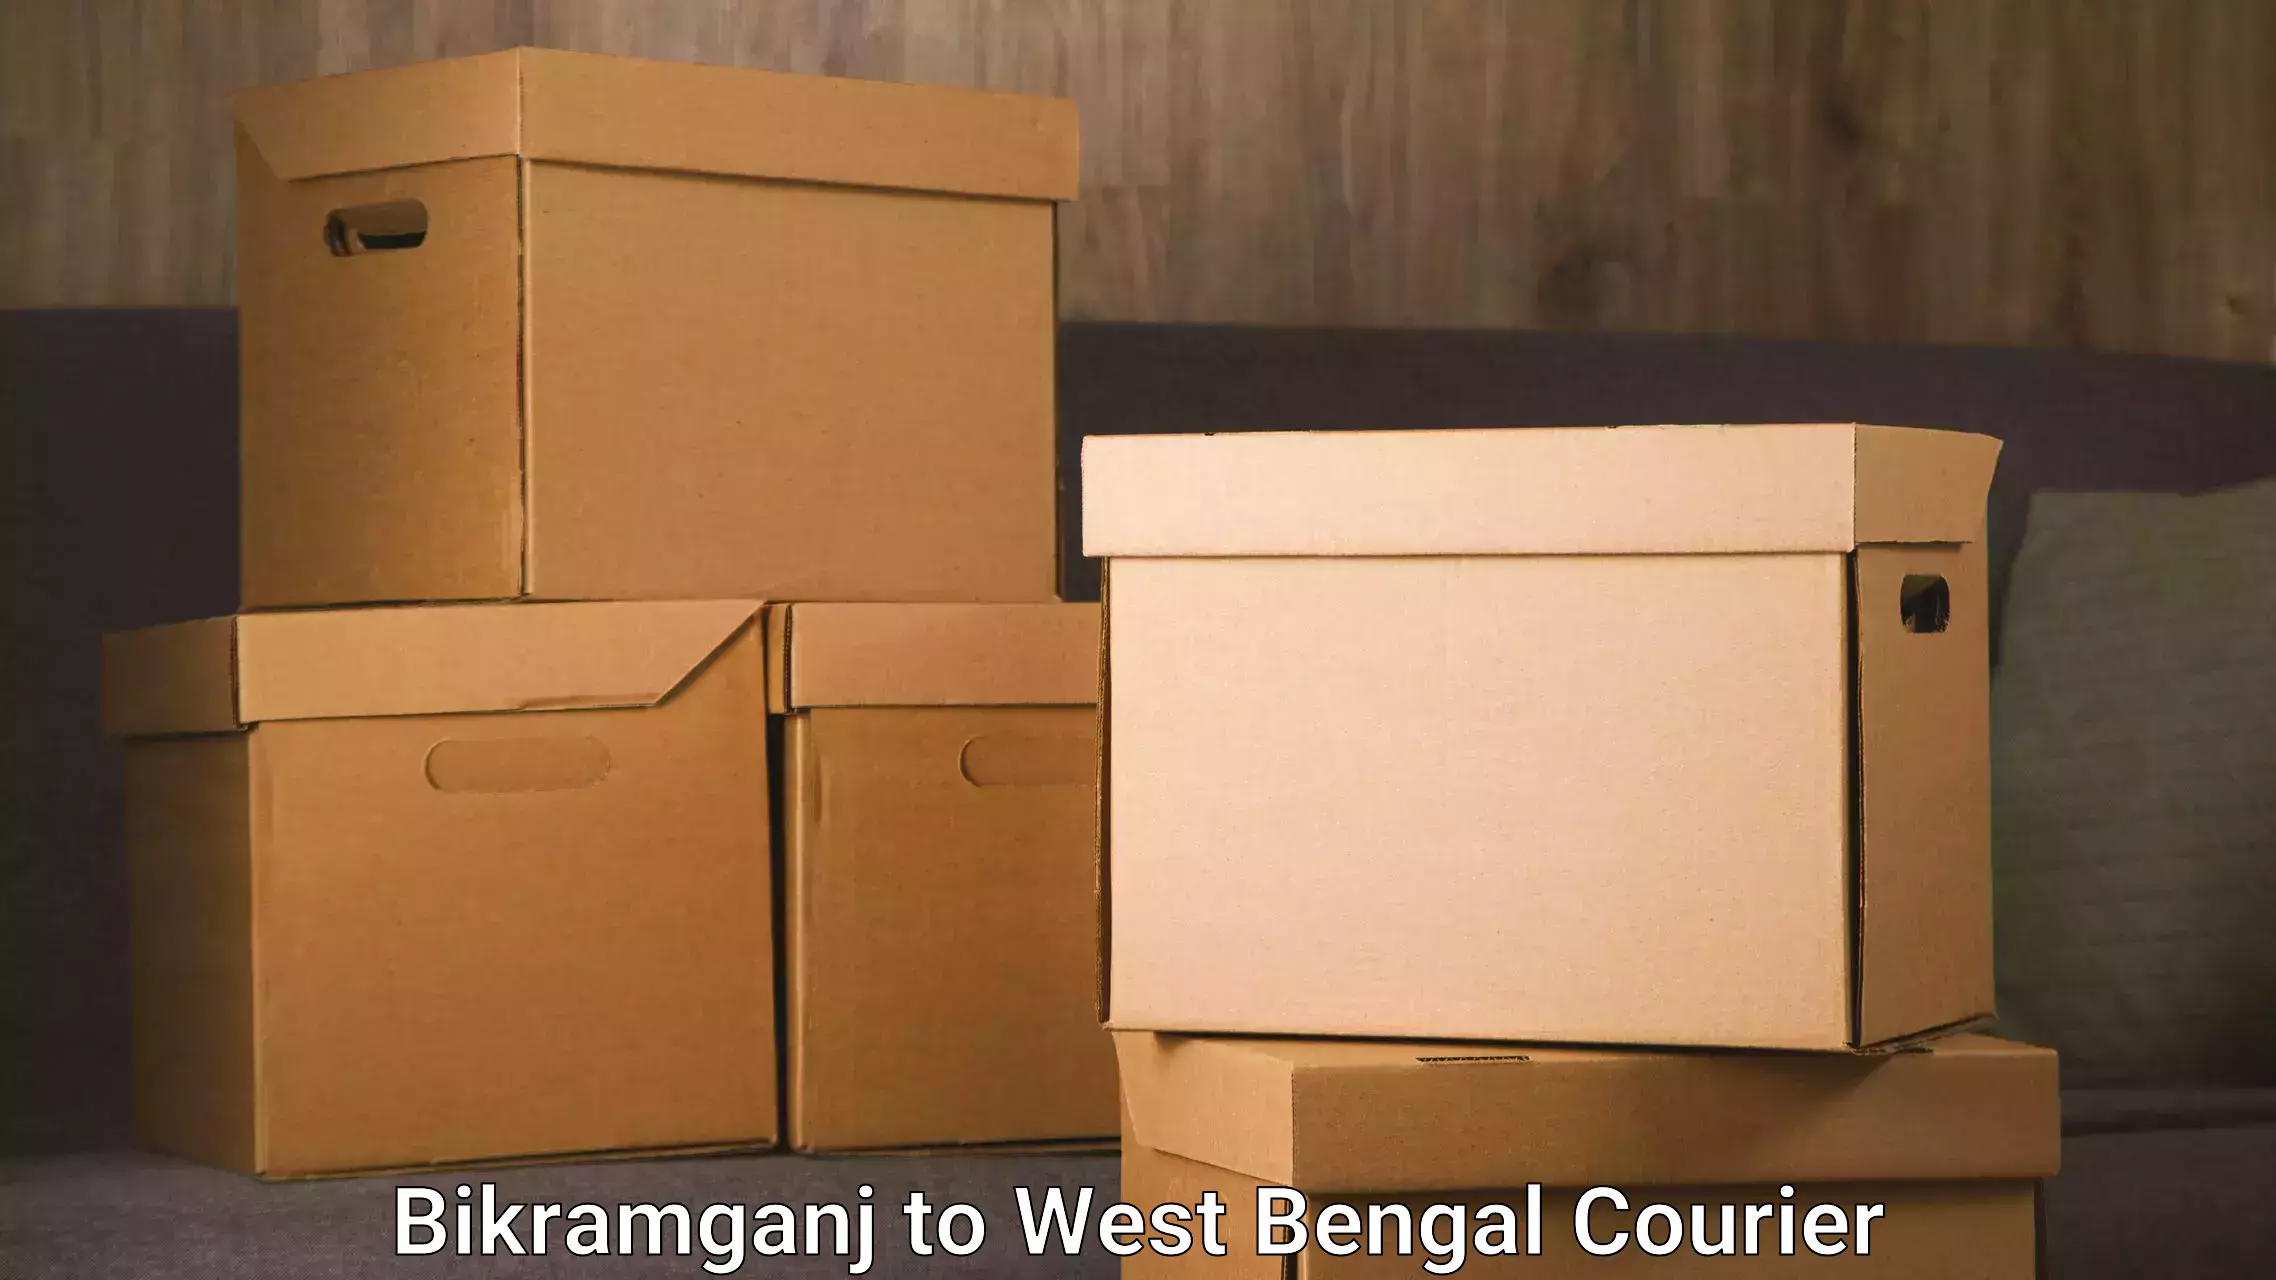 Furniture transport experts Bikramganj to West Bengal